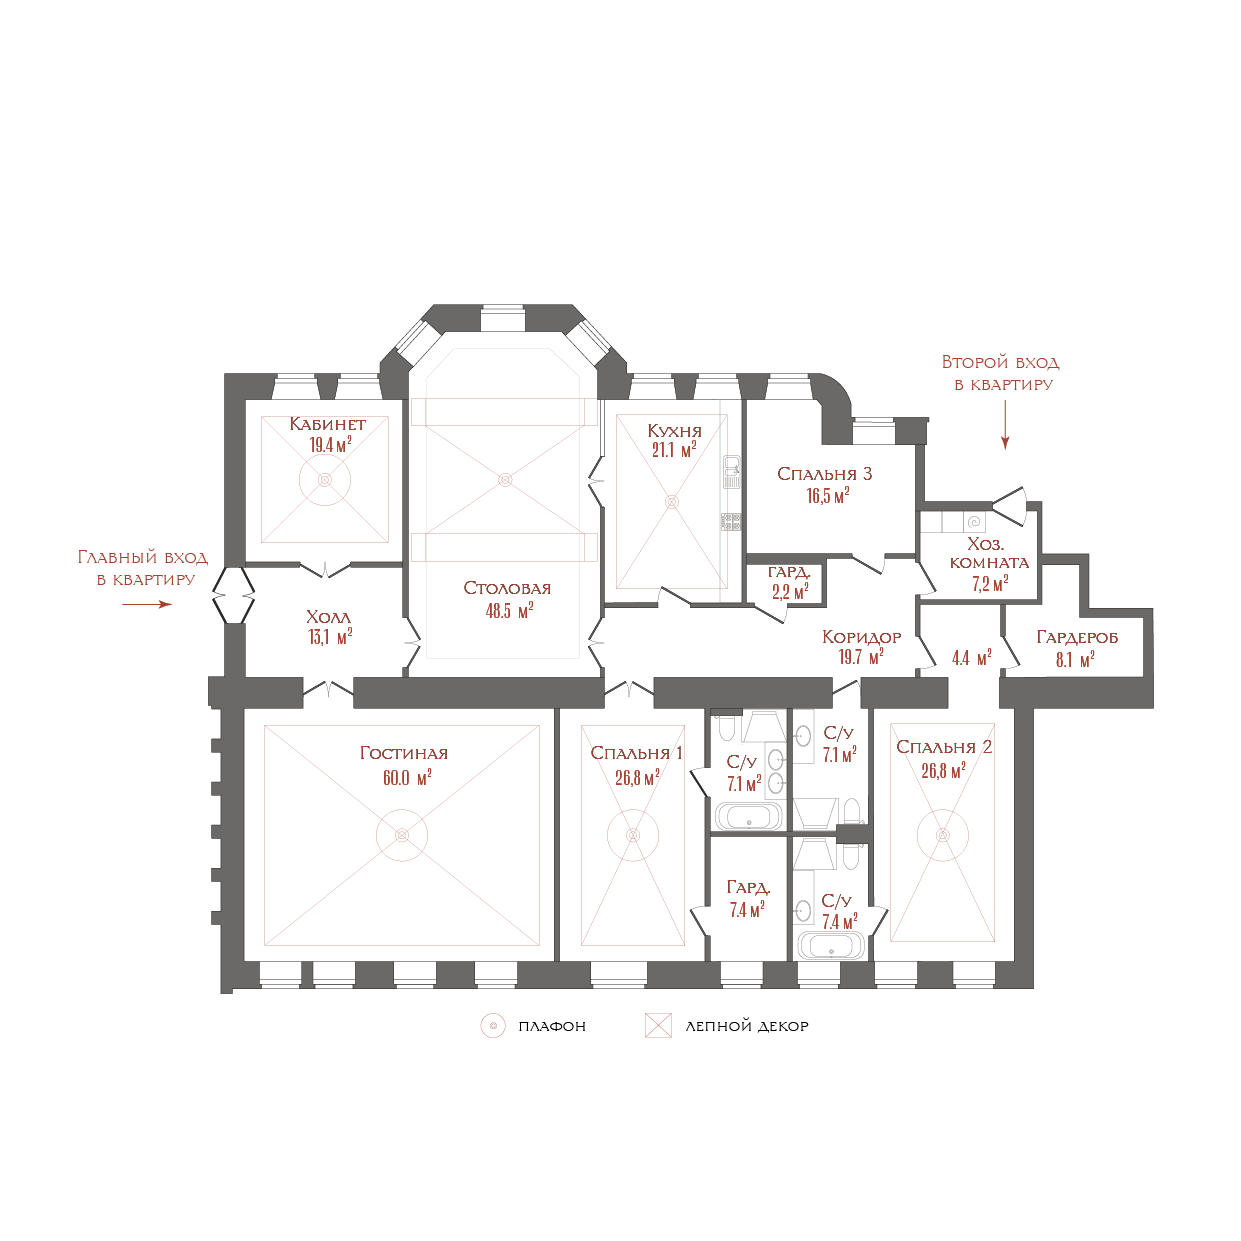 6-комнатная квартира  №1 в Три грации: 304.07 м², этаж 1 - купить в Санкт-Петербурге